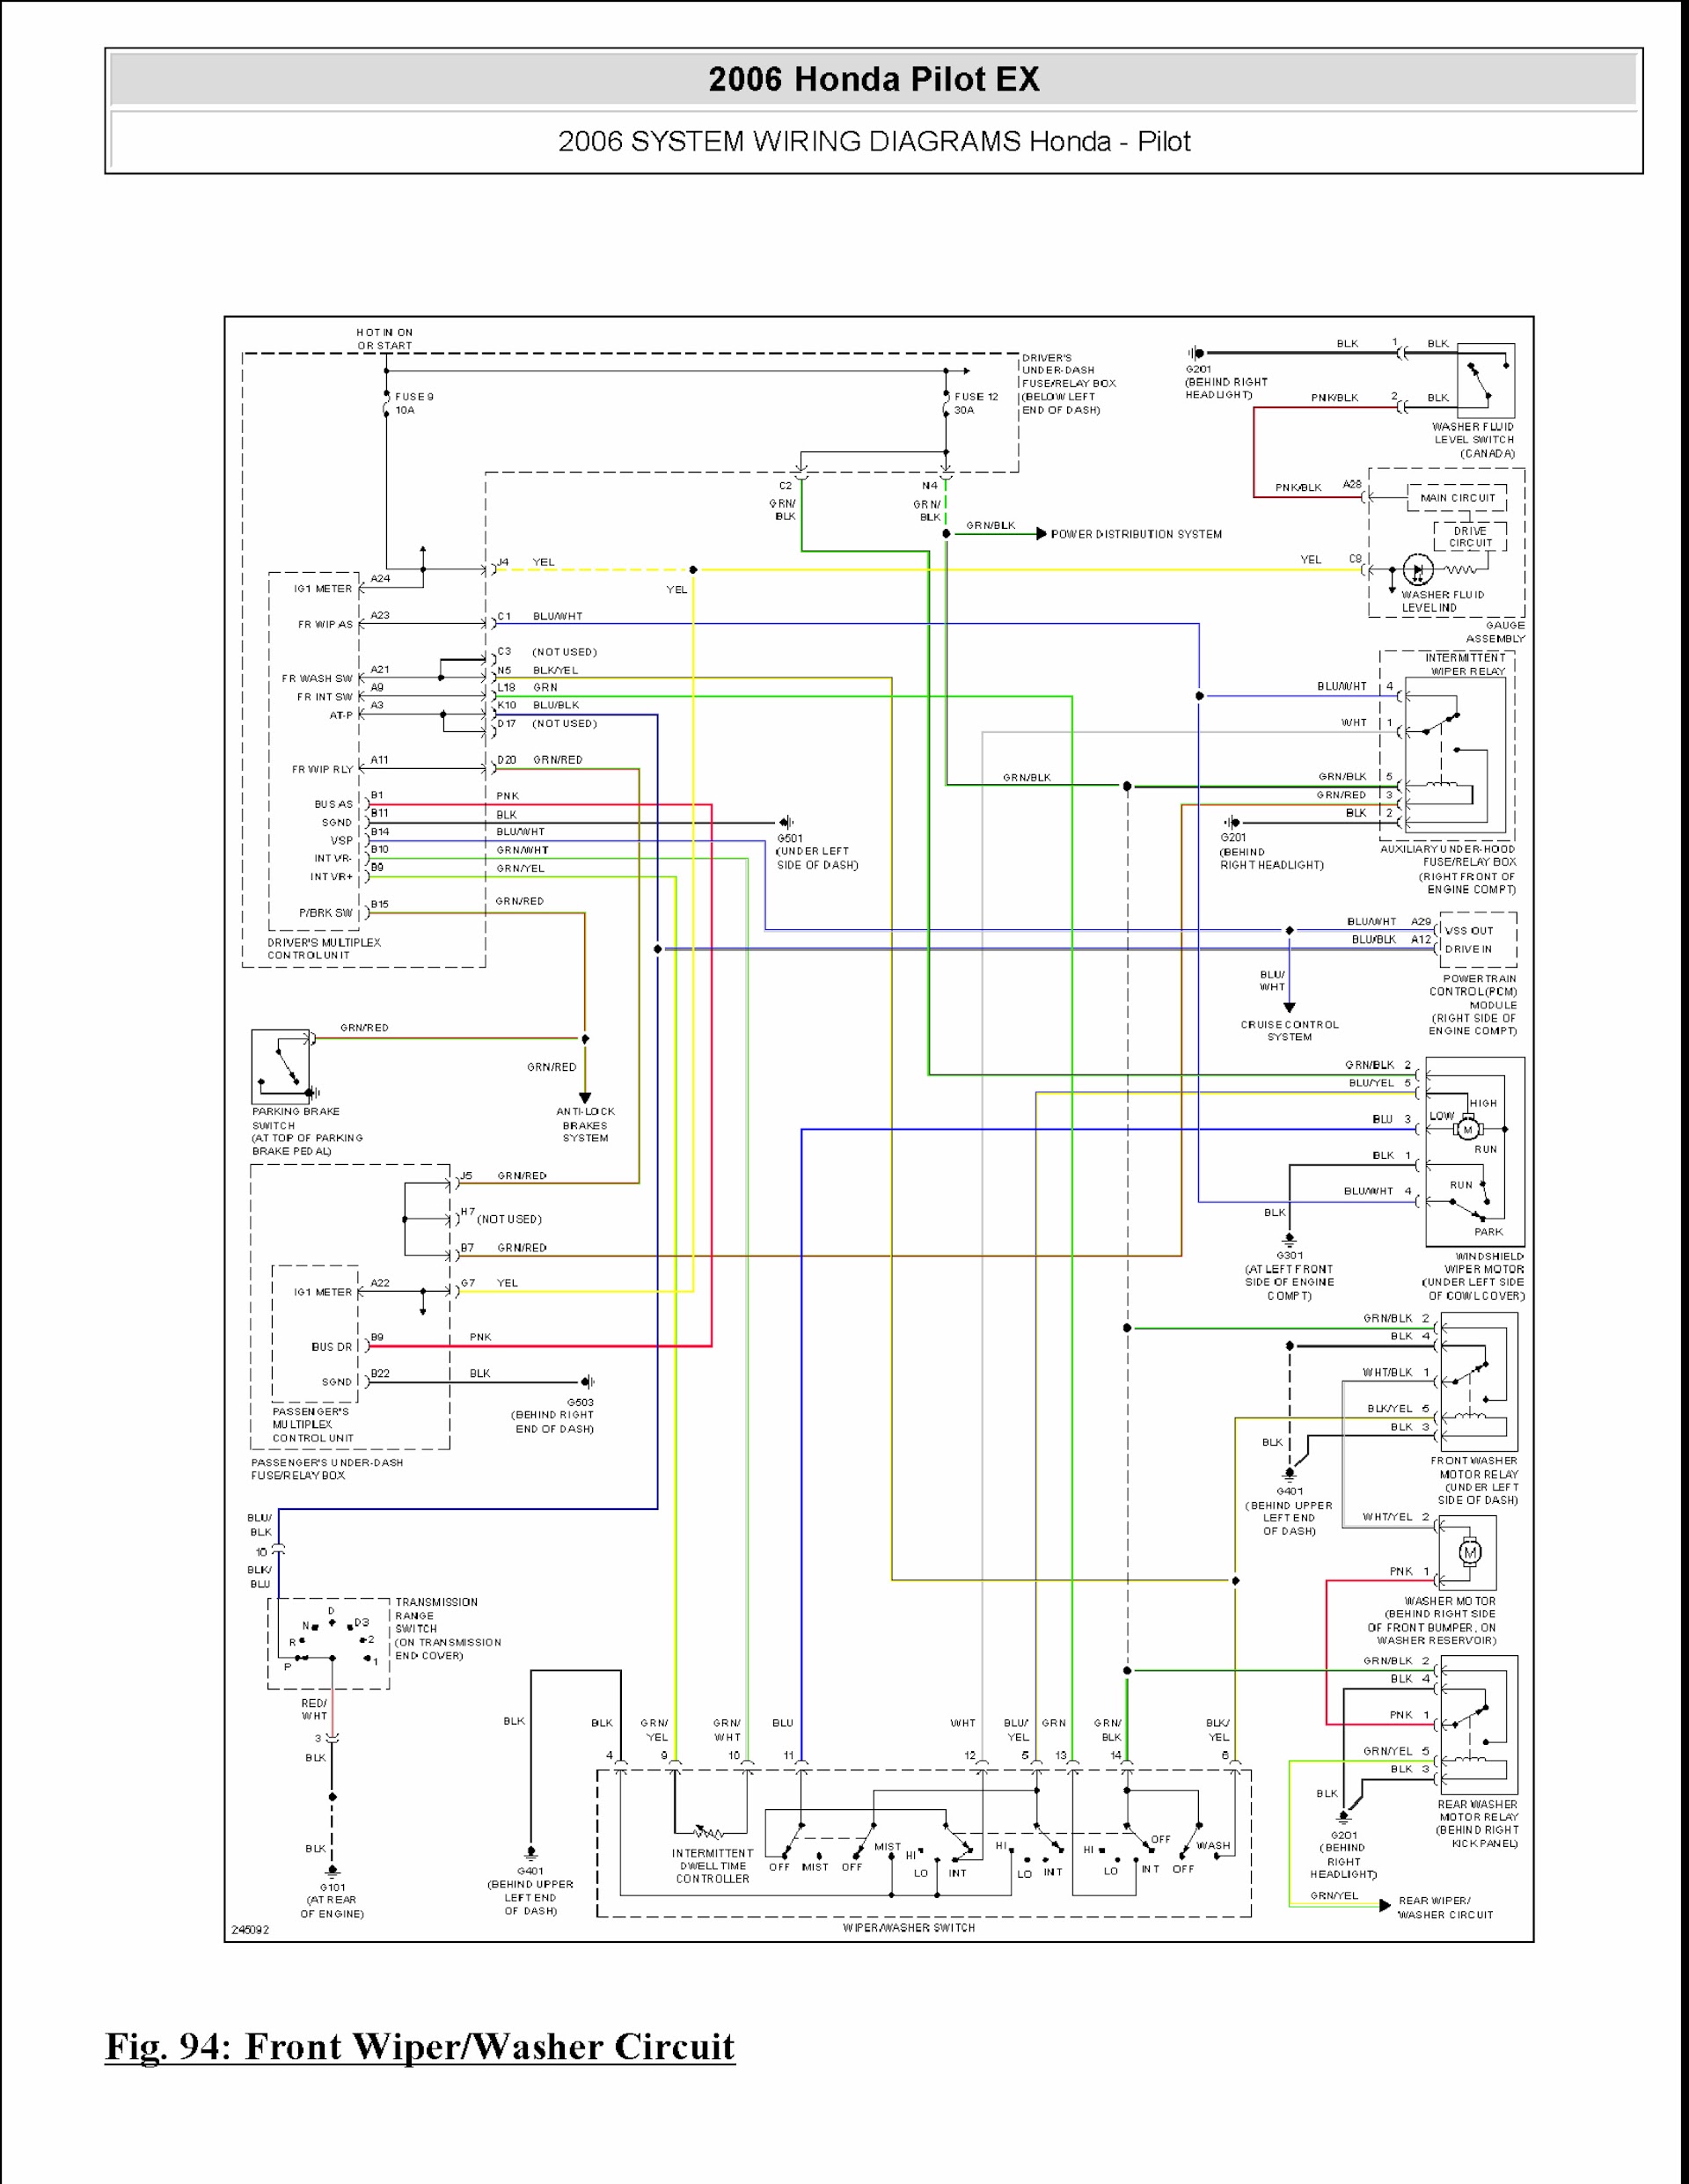 2003-2006 Honda Pilot EX Repair Manual wiring diagram